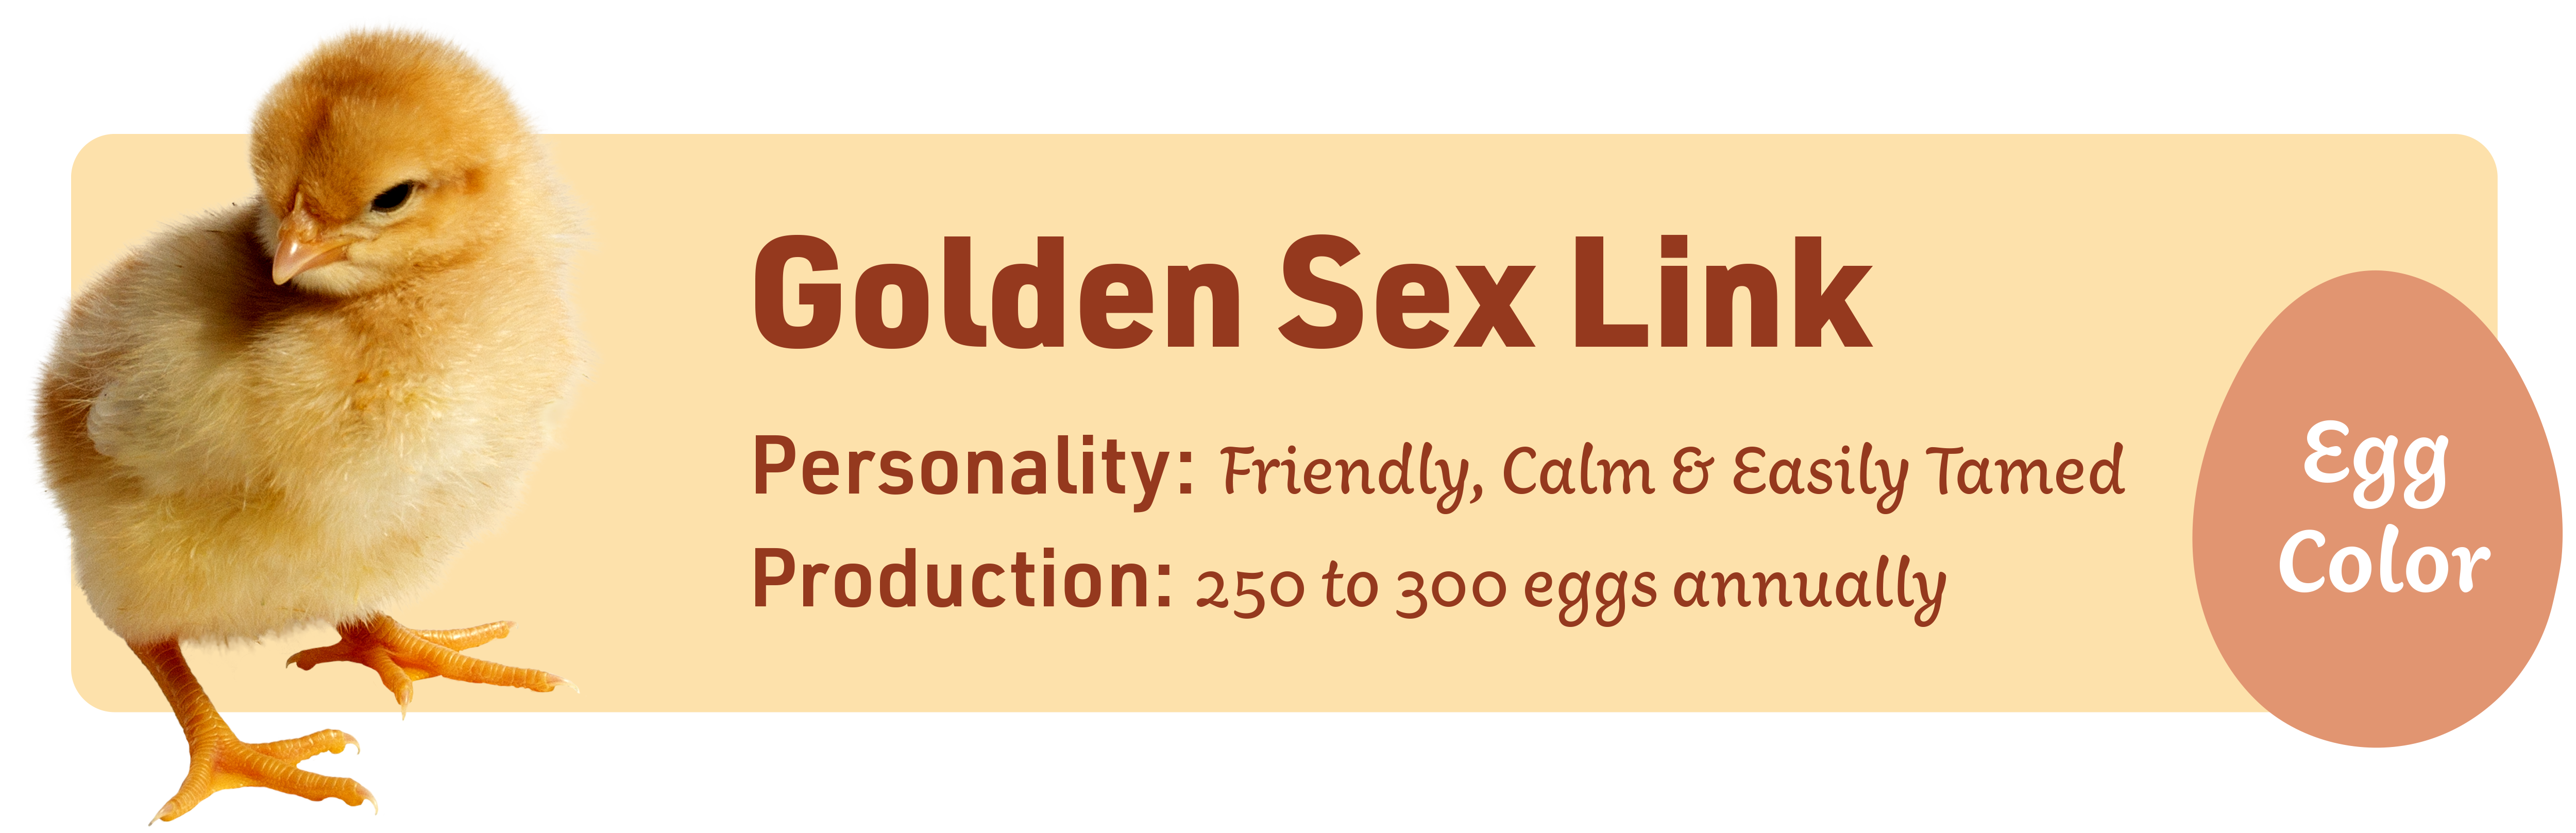 Golden Sex Link_Popular_chicks_v1